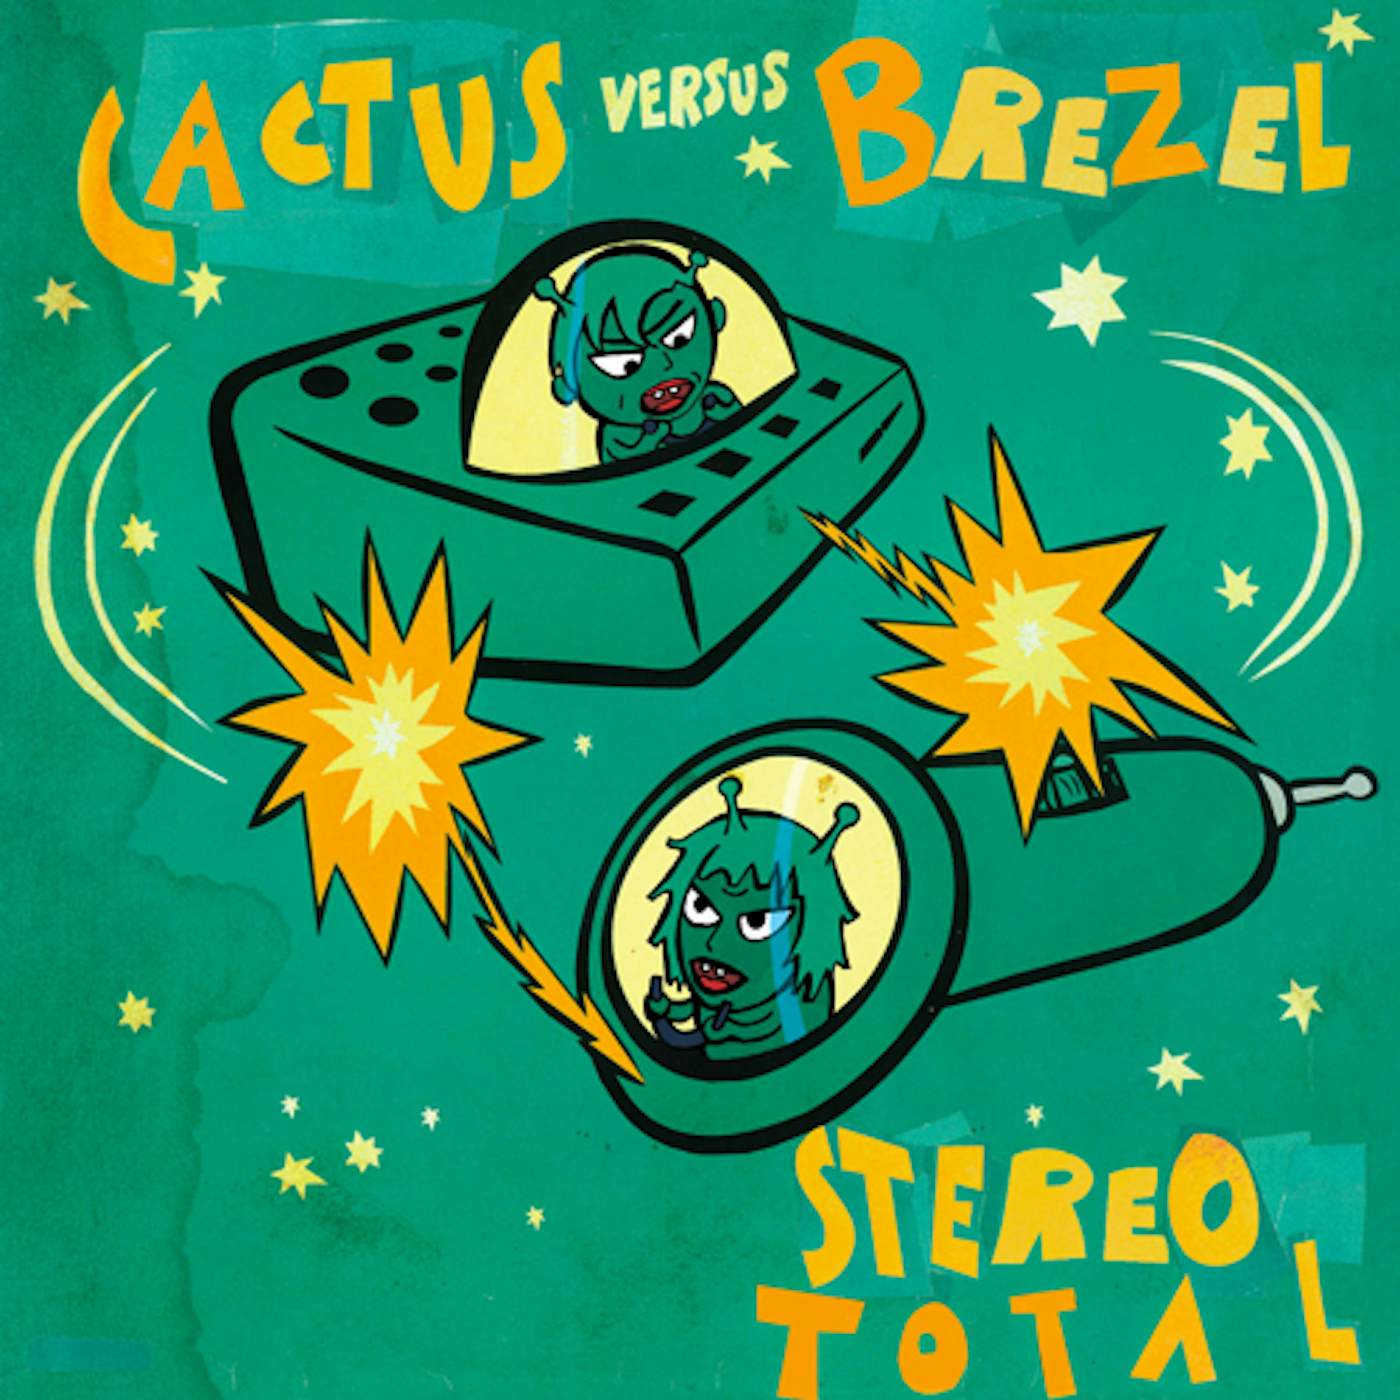 Stereo Total CACTUS VERSUS BREZEL CD